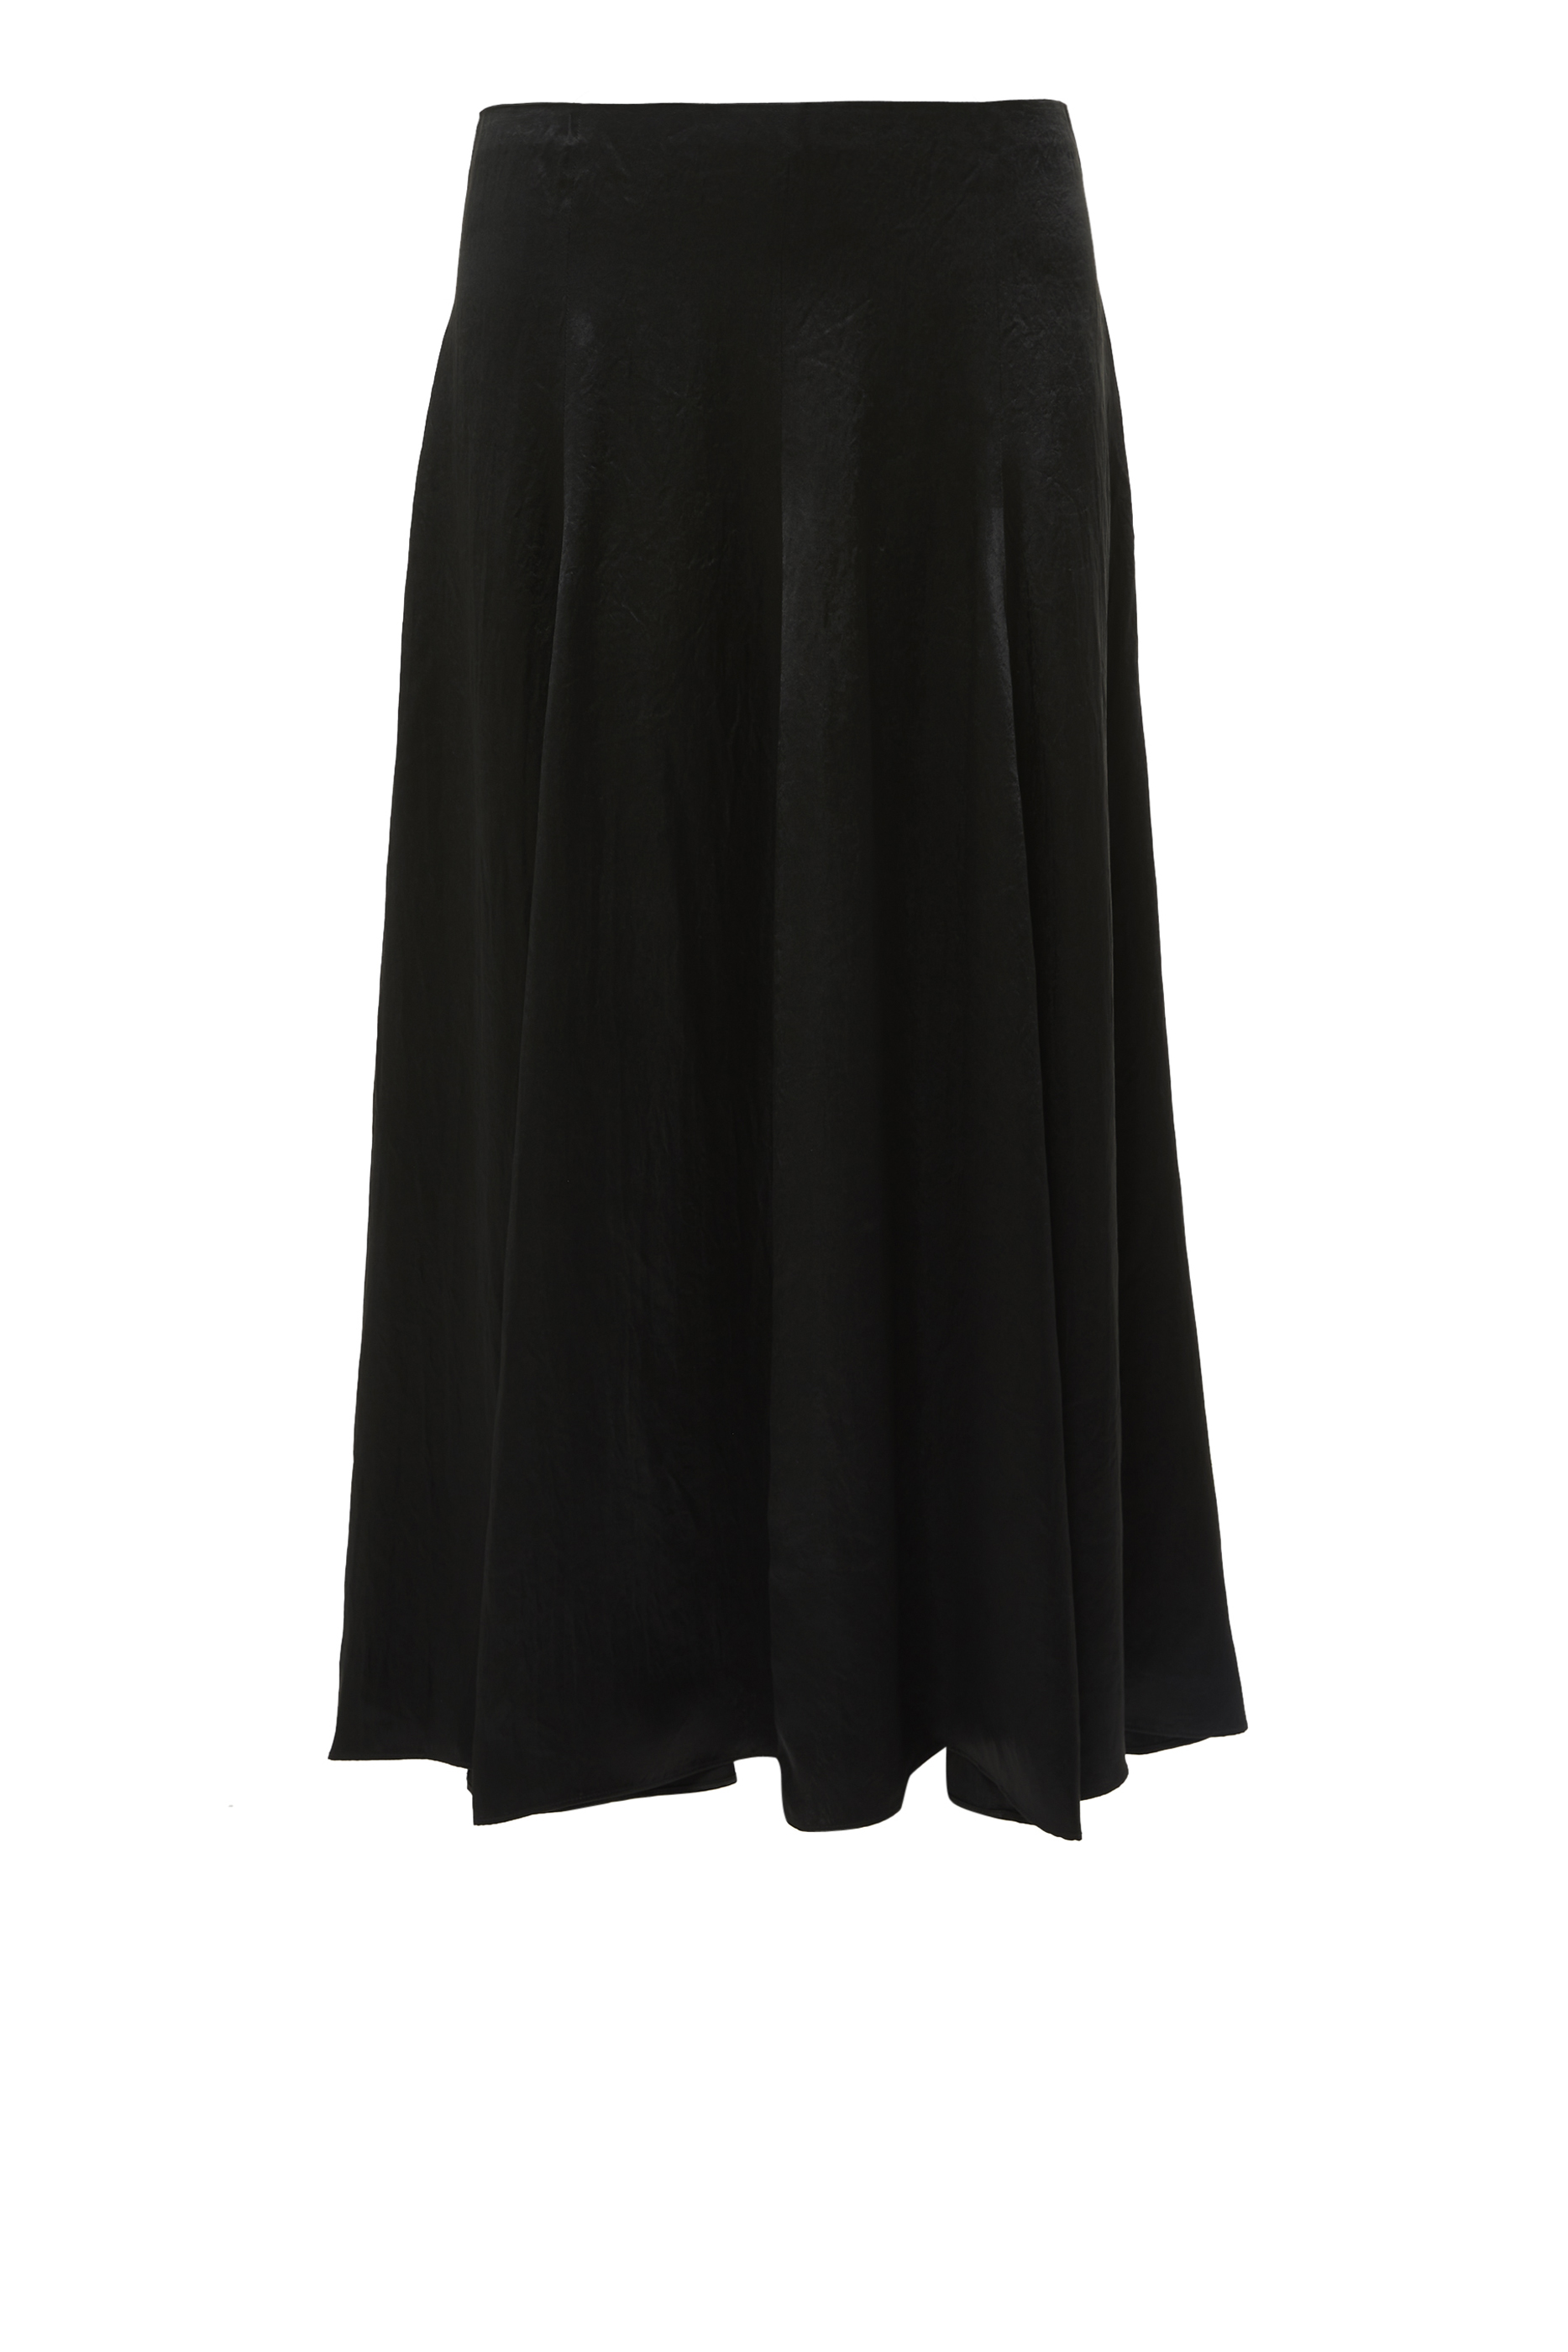 Buy Vince Paneled Slip Skirt for Womens | Bloomingdale's Kuwait